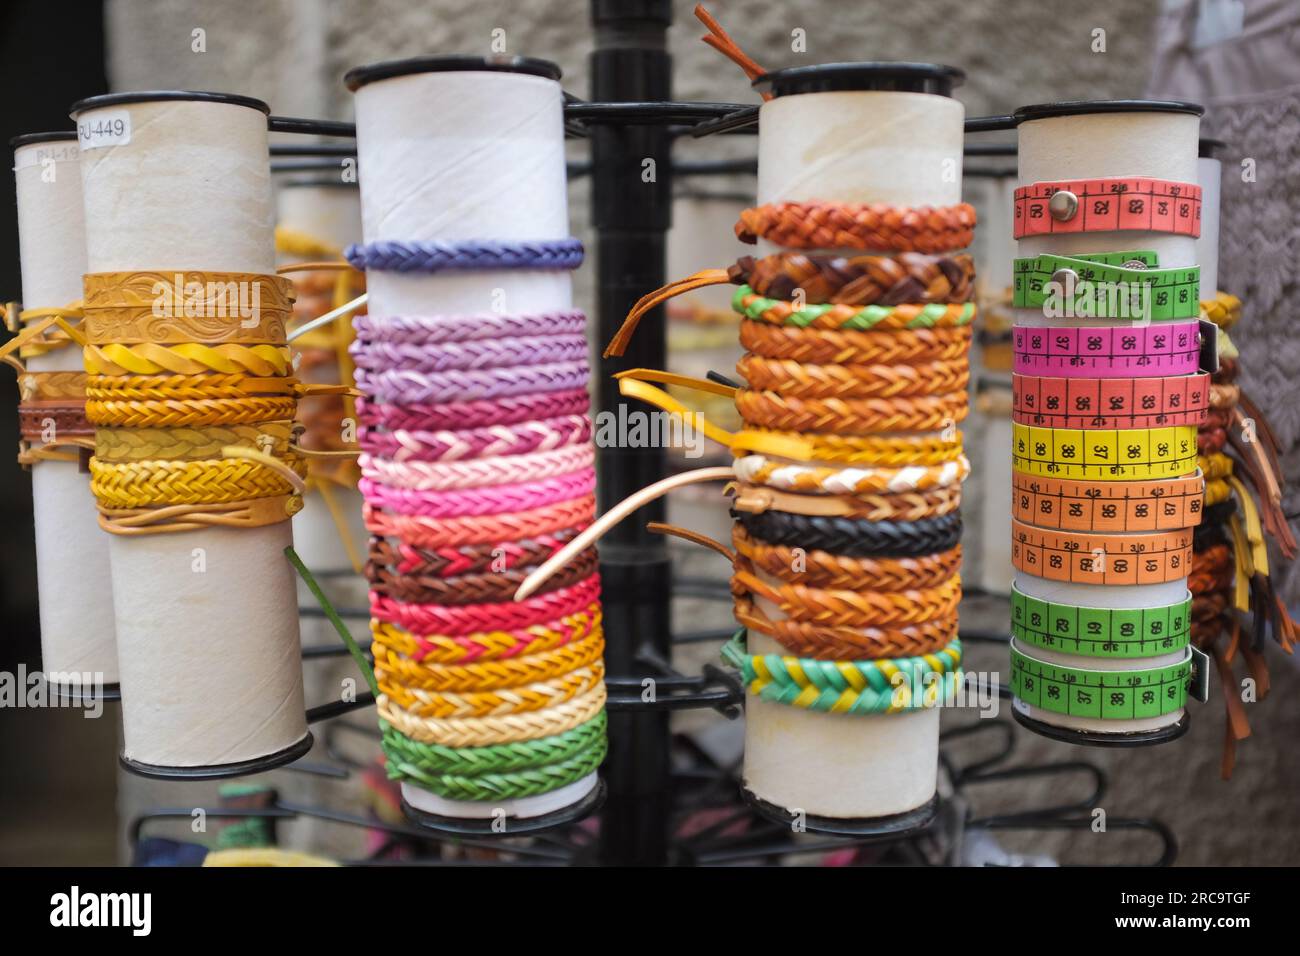 Cinque Terre, Italia - braccialetti colorati esposti all'esterno di un negozio. Souvenir locali venduti a Riomaggiore, una cittadina di mare sulla Riviera Italiana. Foto Stock